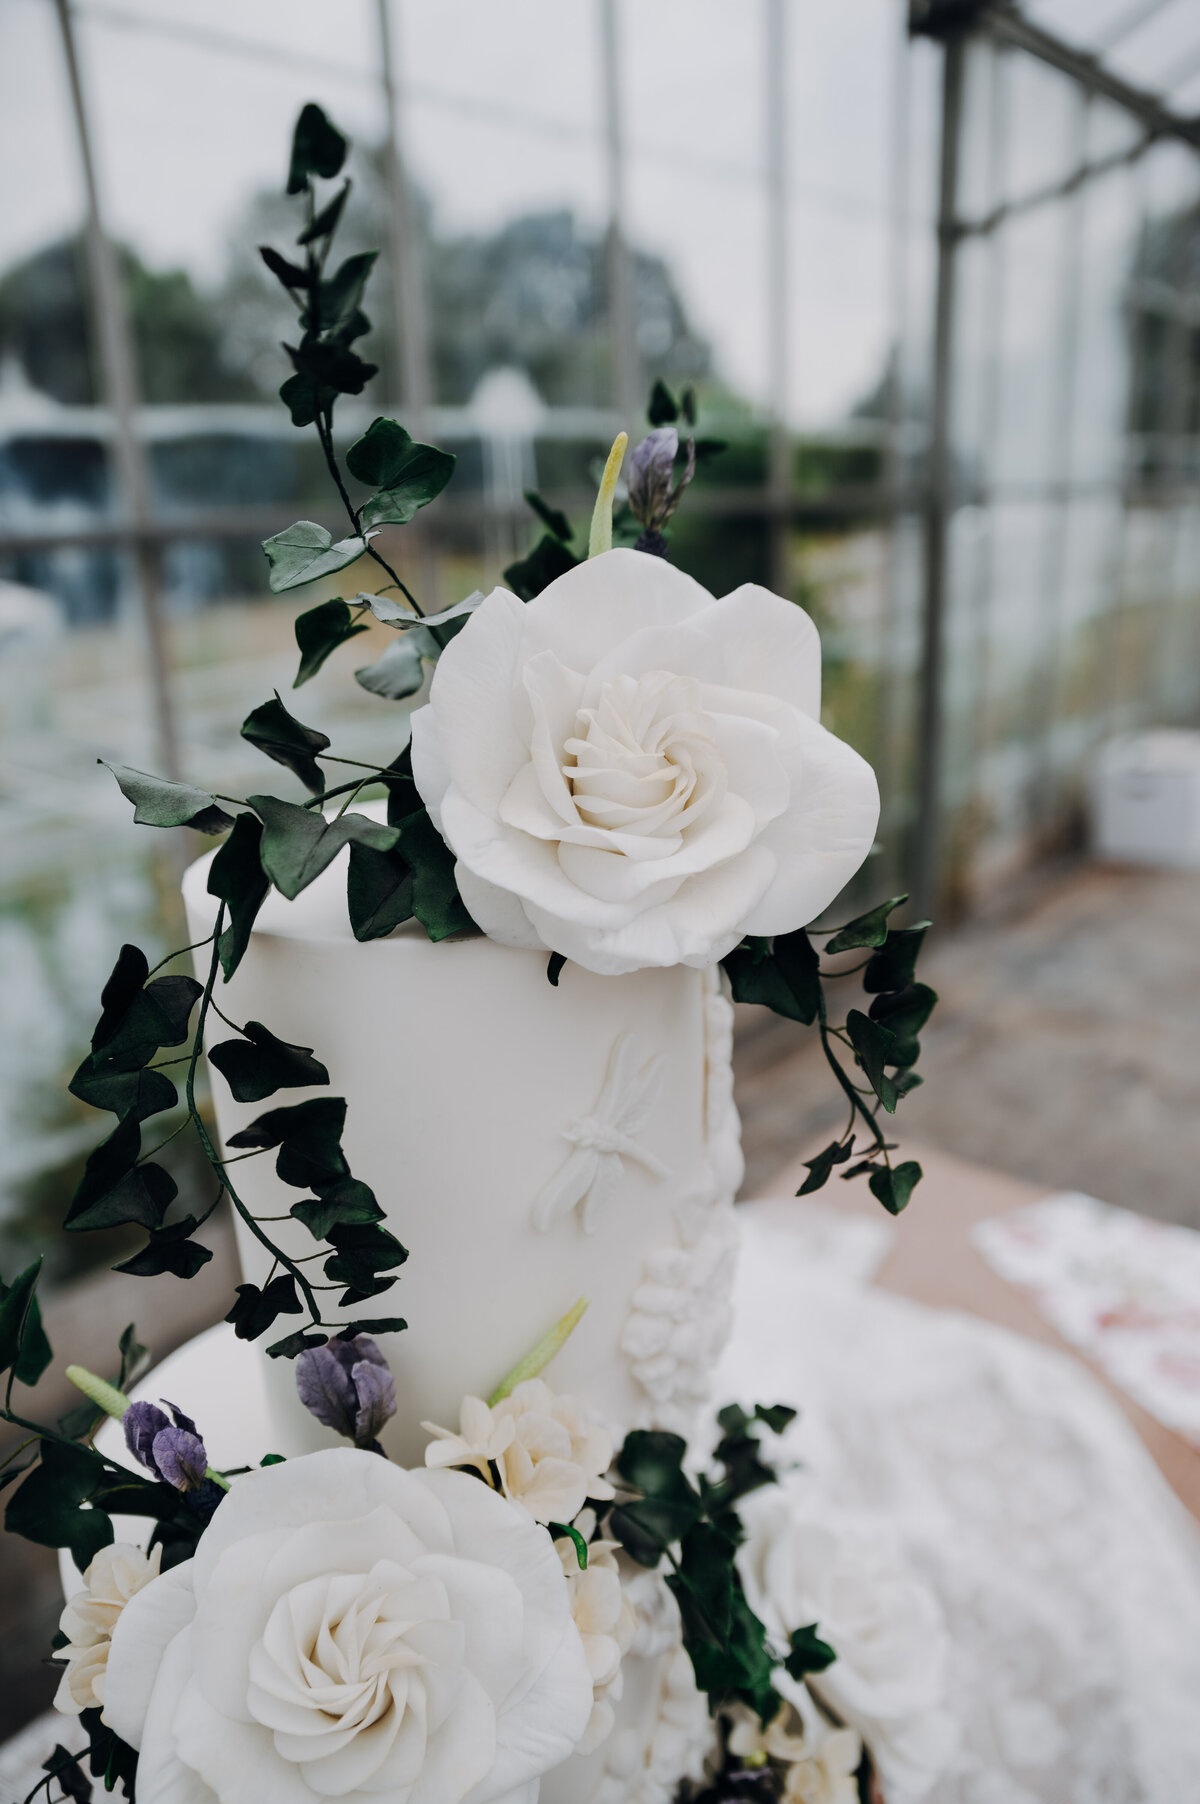 Luxury nature inspired wedding cake designer vanilla Spice Cake Studio Northamptonshire white textured tiered cake design white sugar flowers